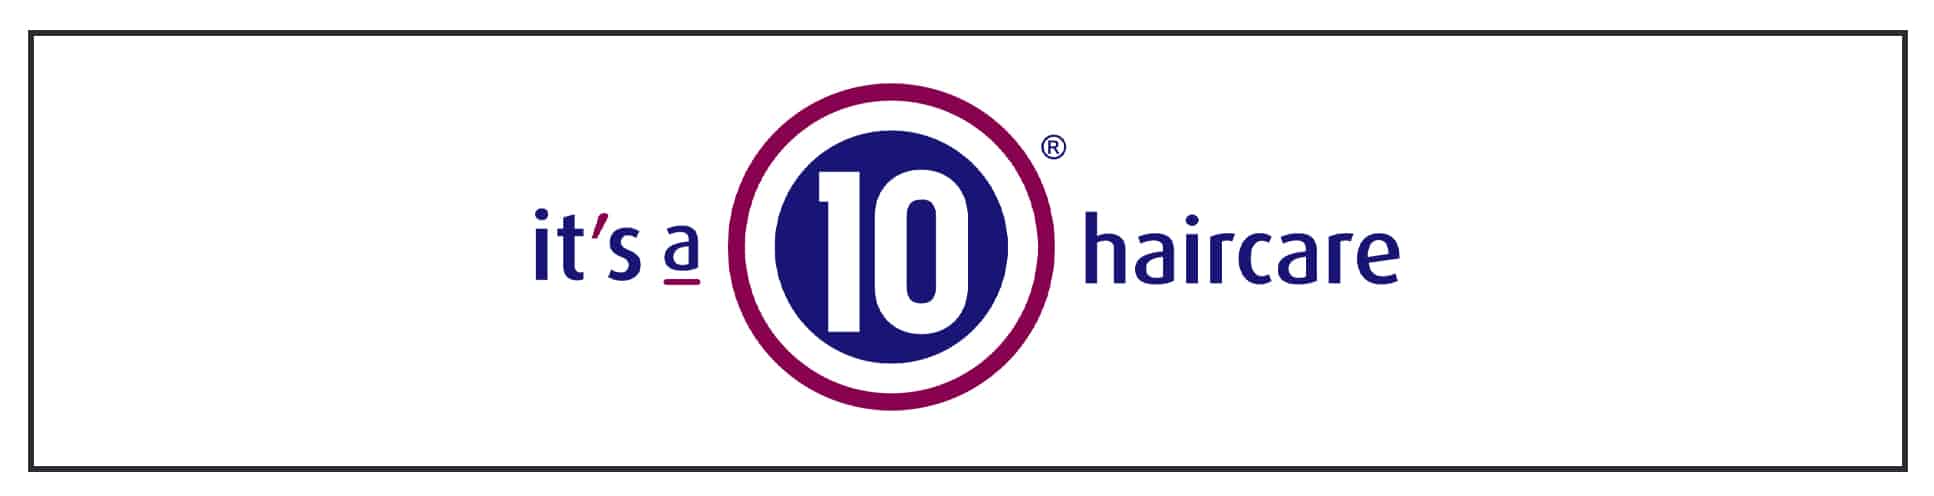 It's a 10 haircare logo.